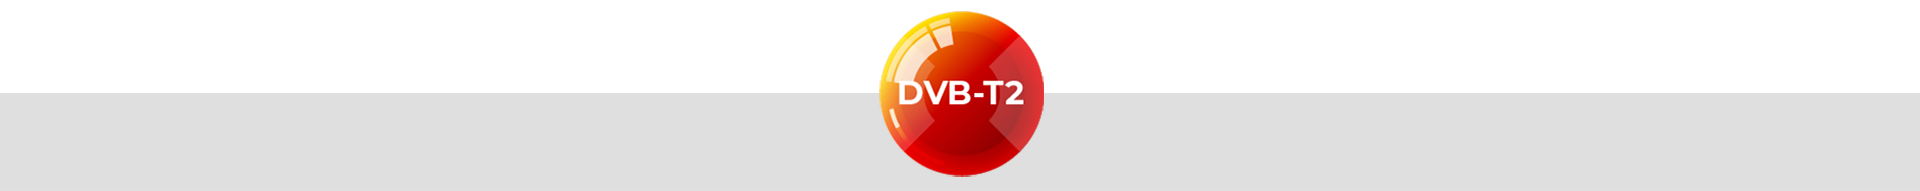 Lista dekoderów i tunerów zgodnych z nowym standardem cyfrowej telewizji naziemnej DVB-T2 HEVC w autoryzowanym sklepie rządowego progrogramu dopłaty Eltrox.pl w kwocie 100zł na zakup nowego dekodera.